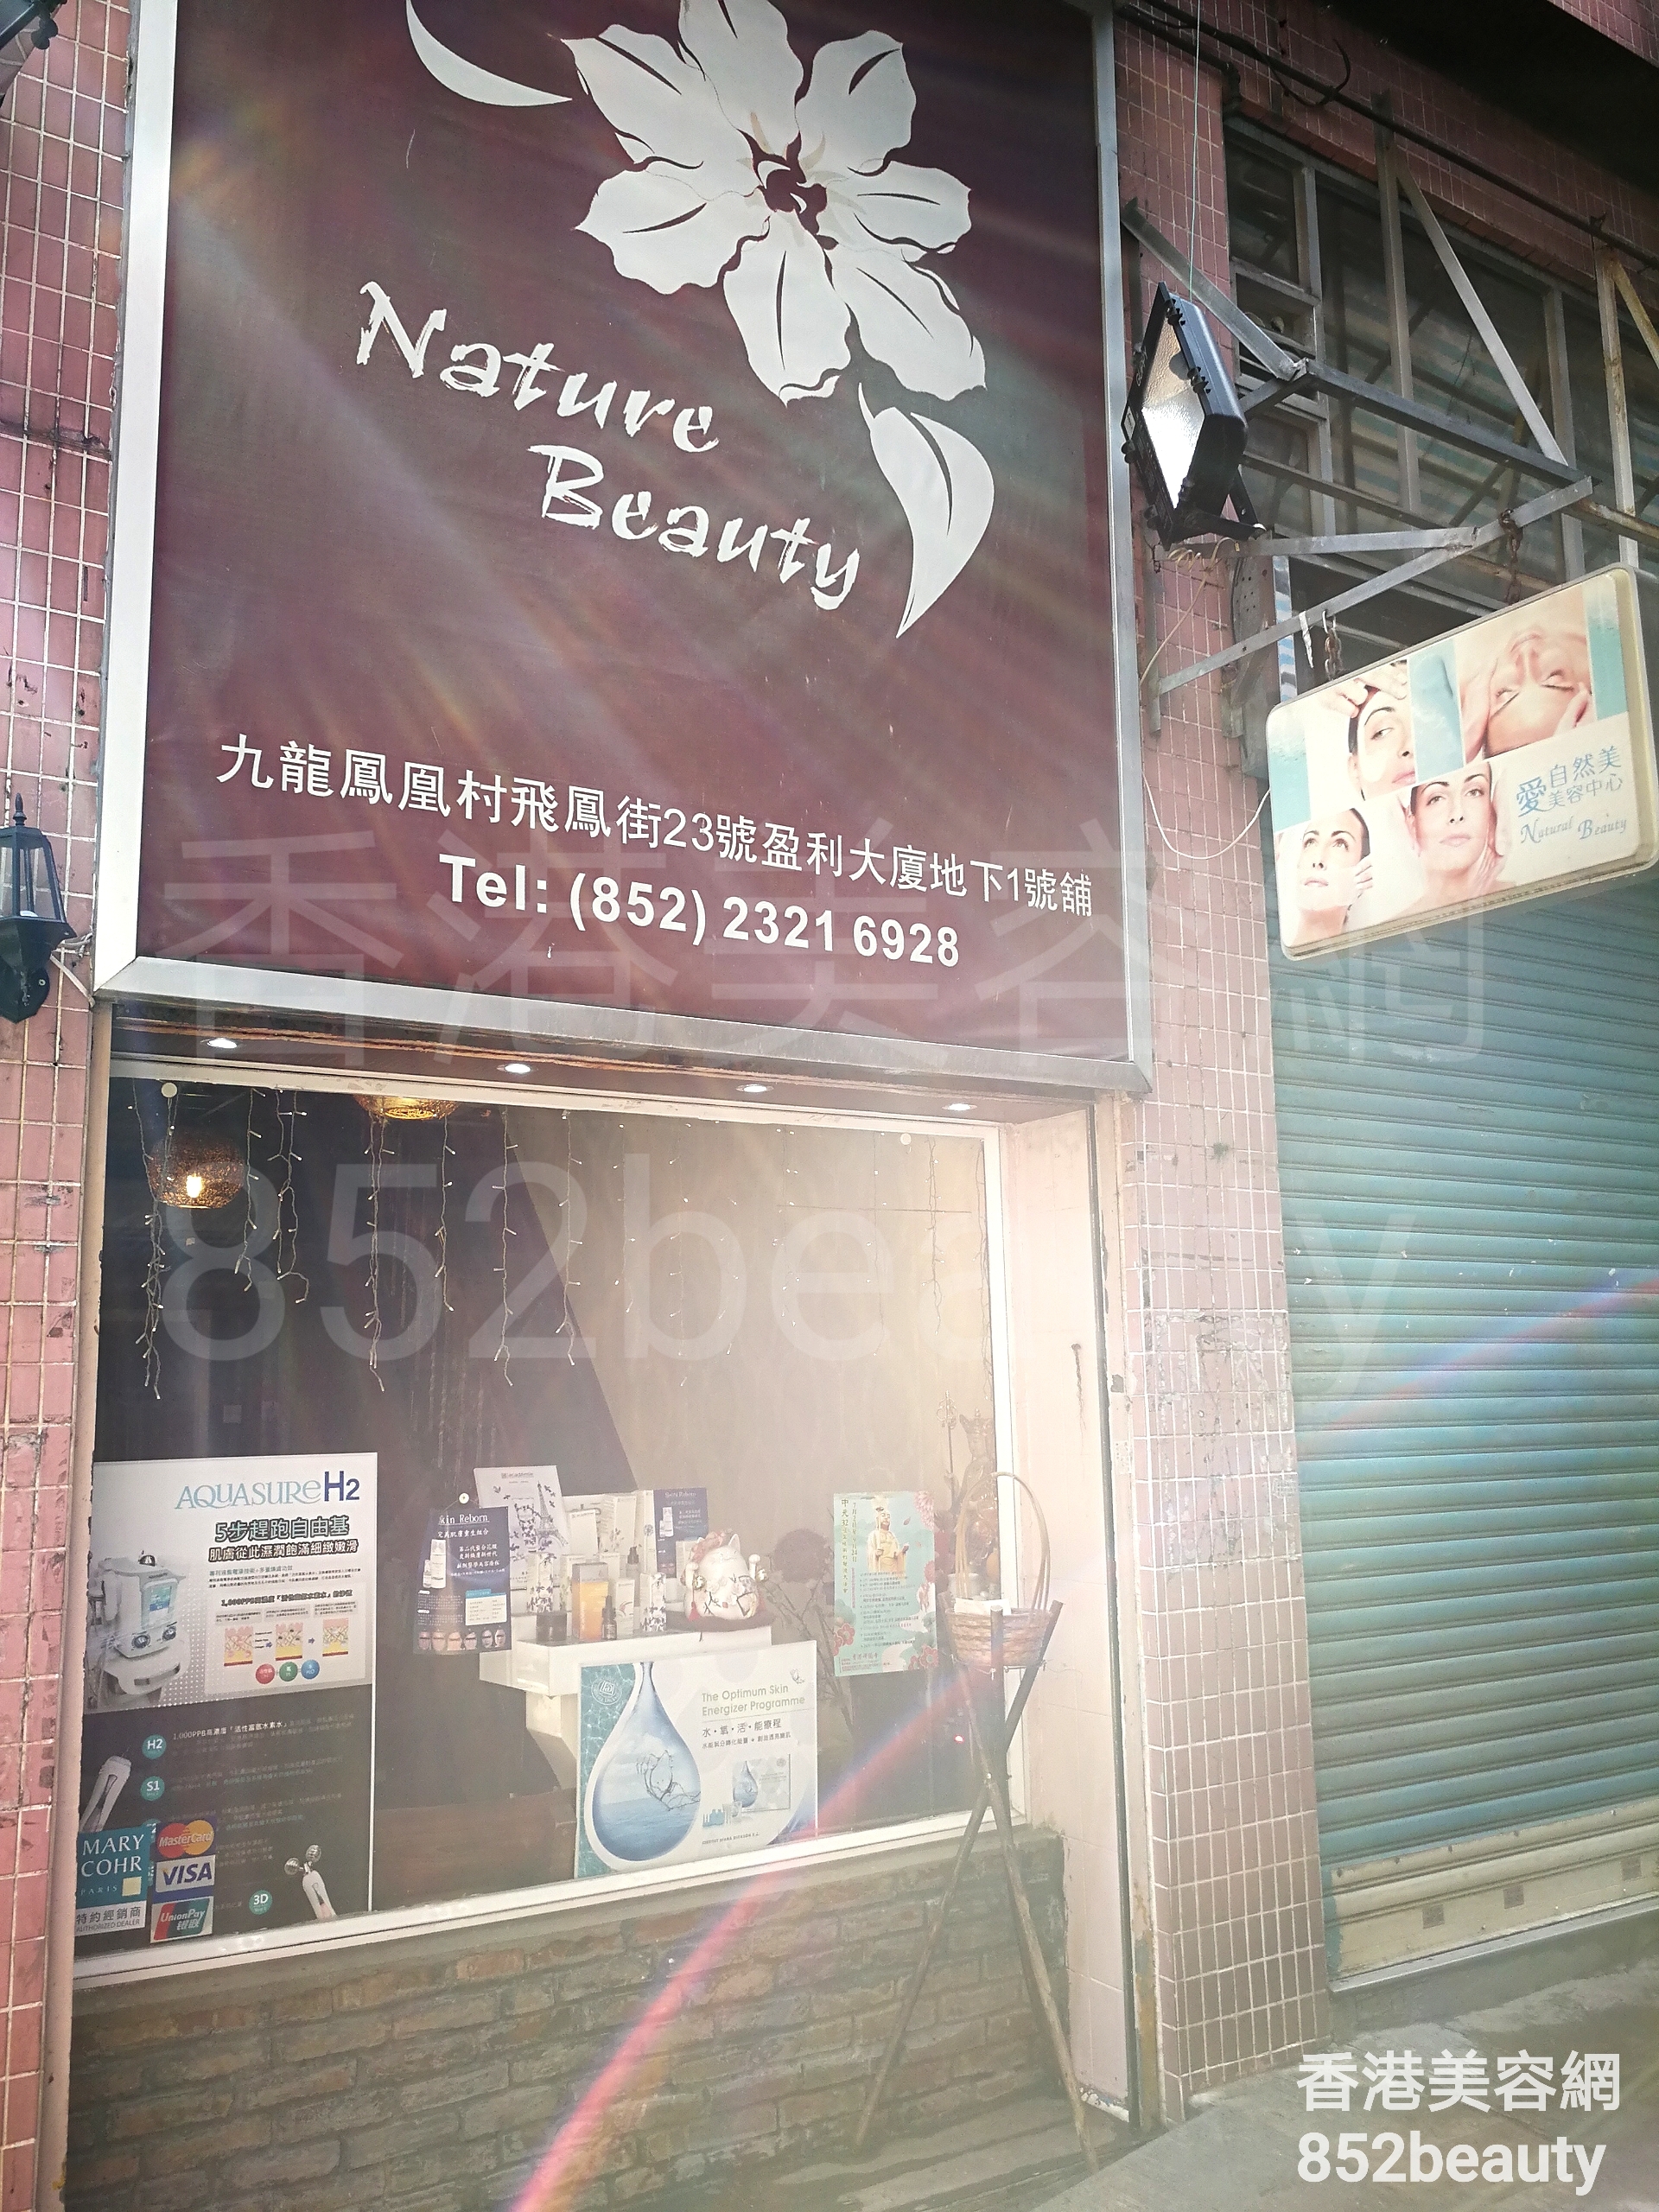 美容院 Beauty Salon: Nature Beauty